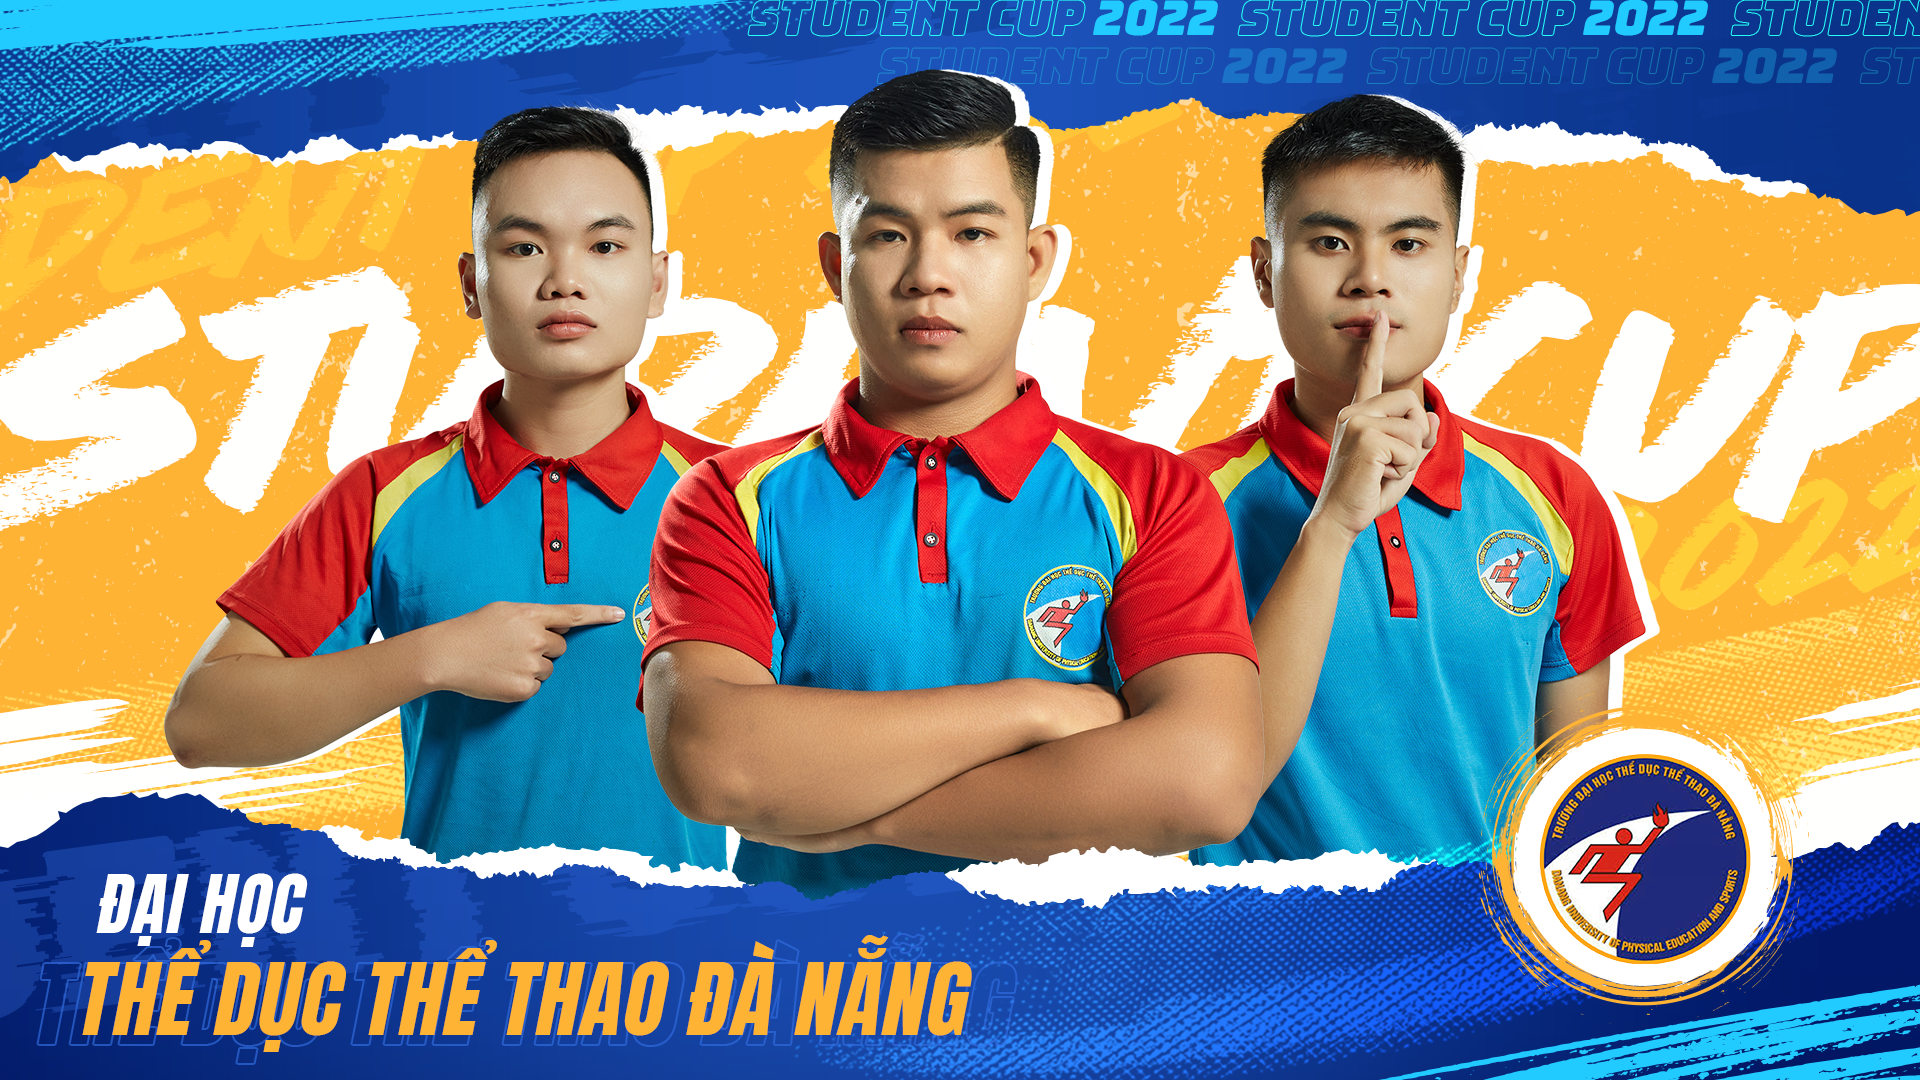 Top 8 mạnh nhất lộ diện, bùng nổ giải đấu FIFA Online 4 hàng đầu dành cho sinh viên Việt Nam - Ảnh 9.